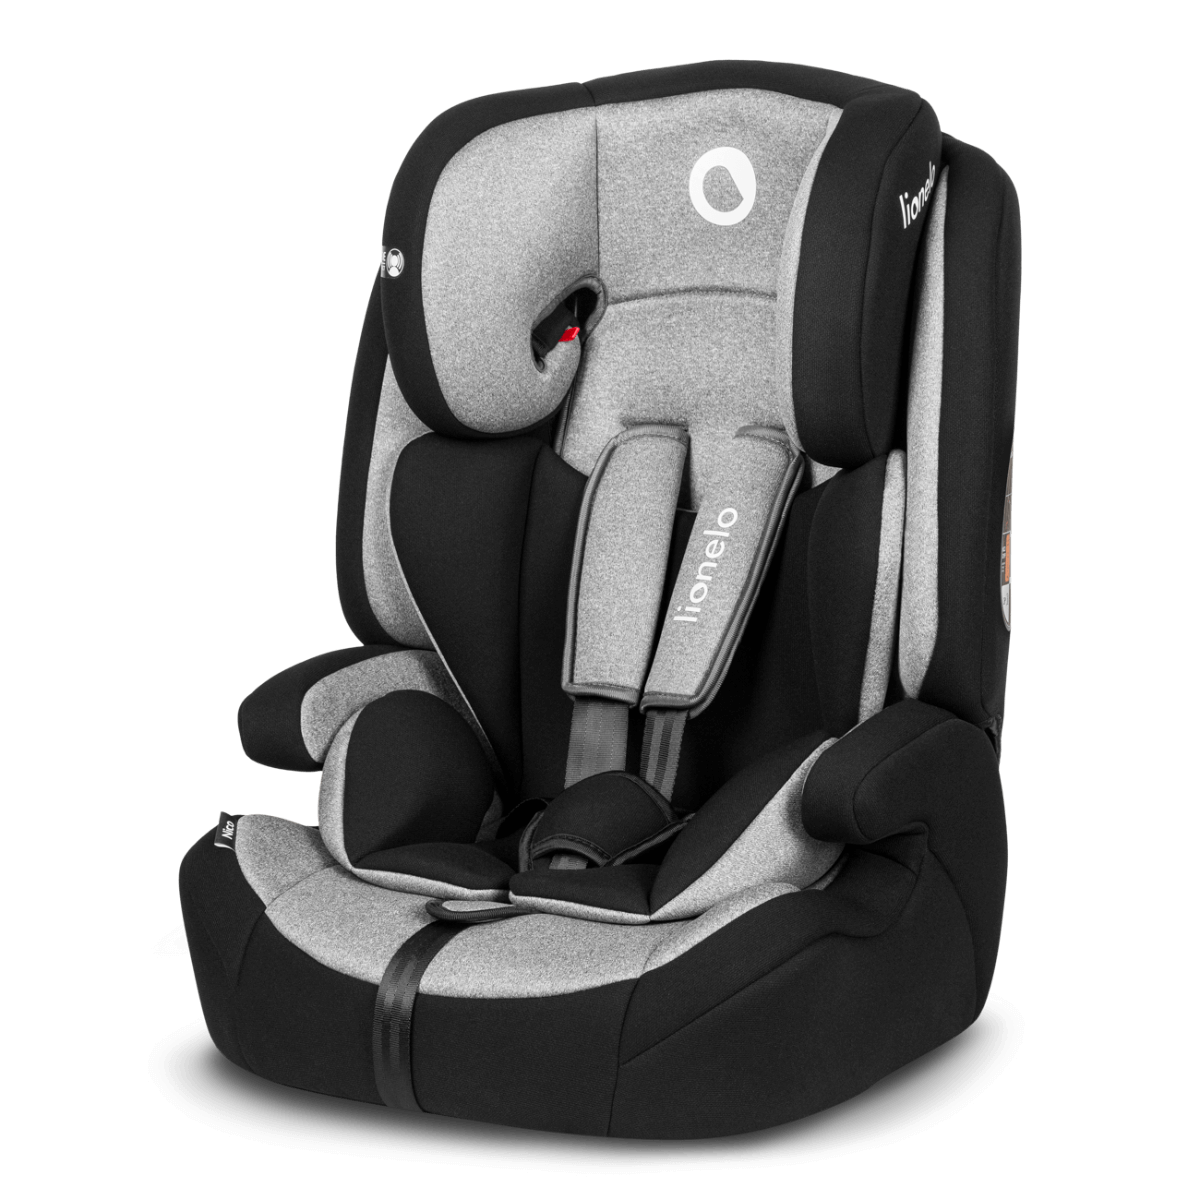 Siège-auto bébé Nico Lionelo - Baby & Toddler Car Seat Accessories par Lionelo